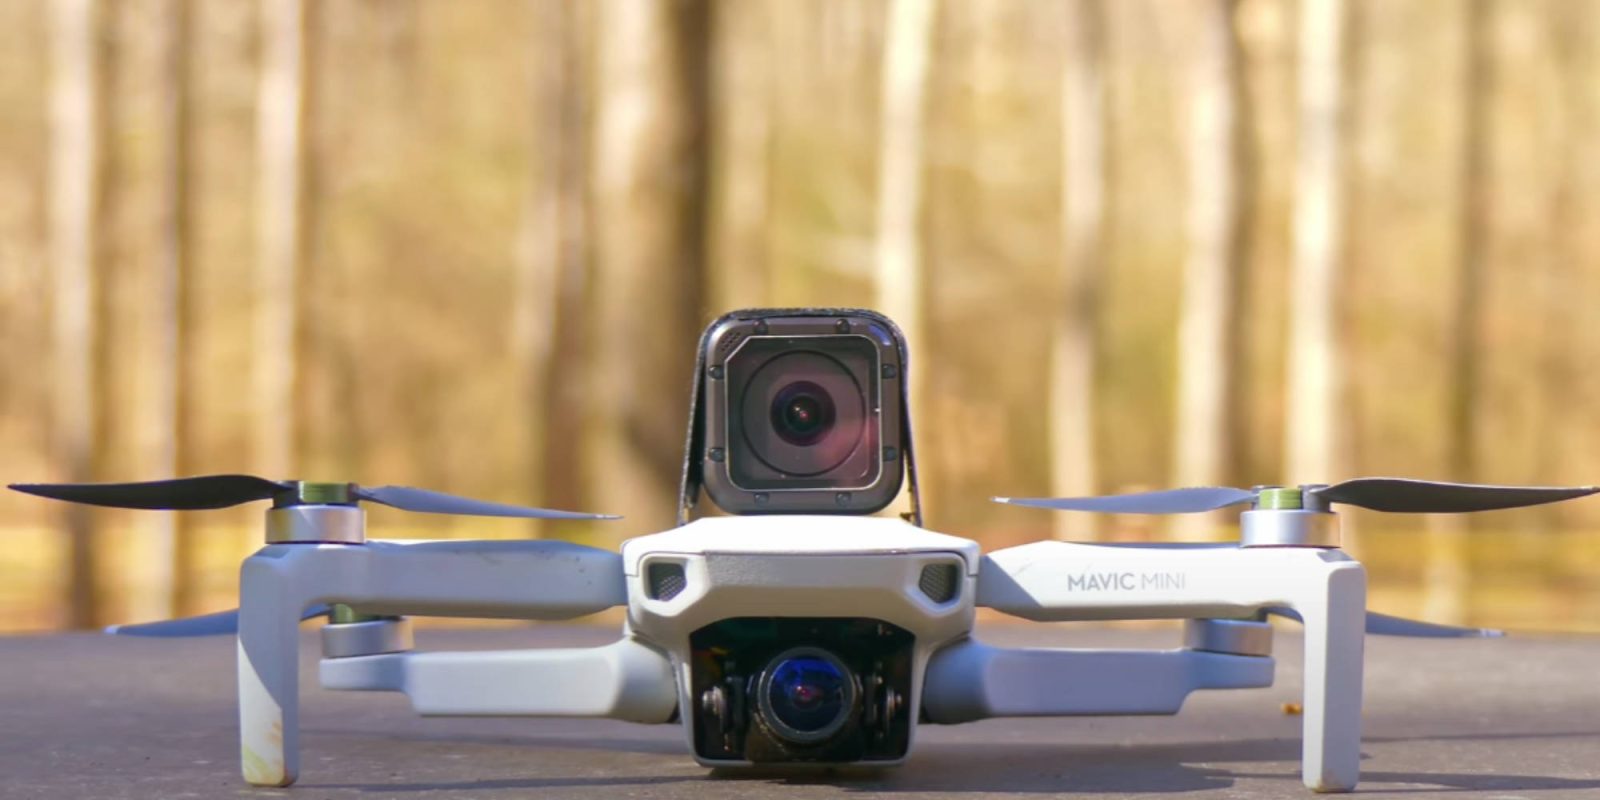 Turn your DJI Mavic Mini into an FPV drone